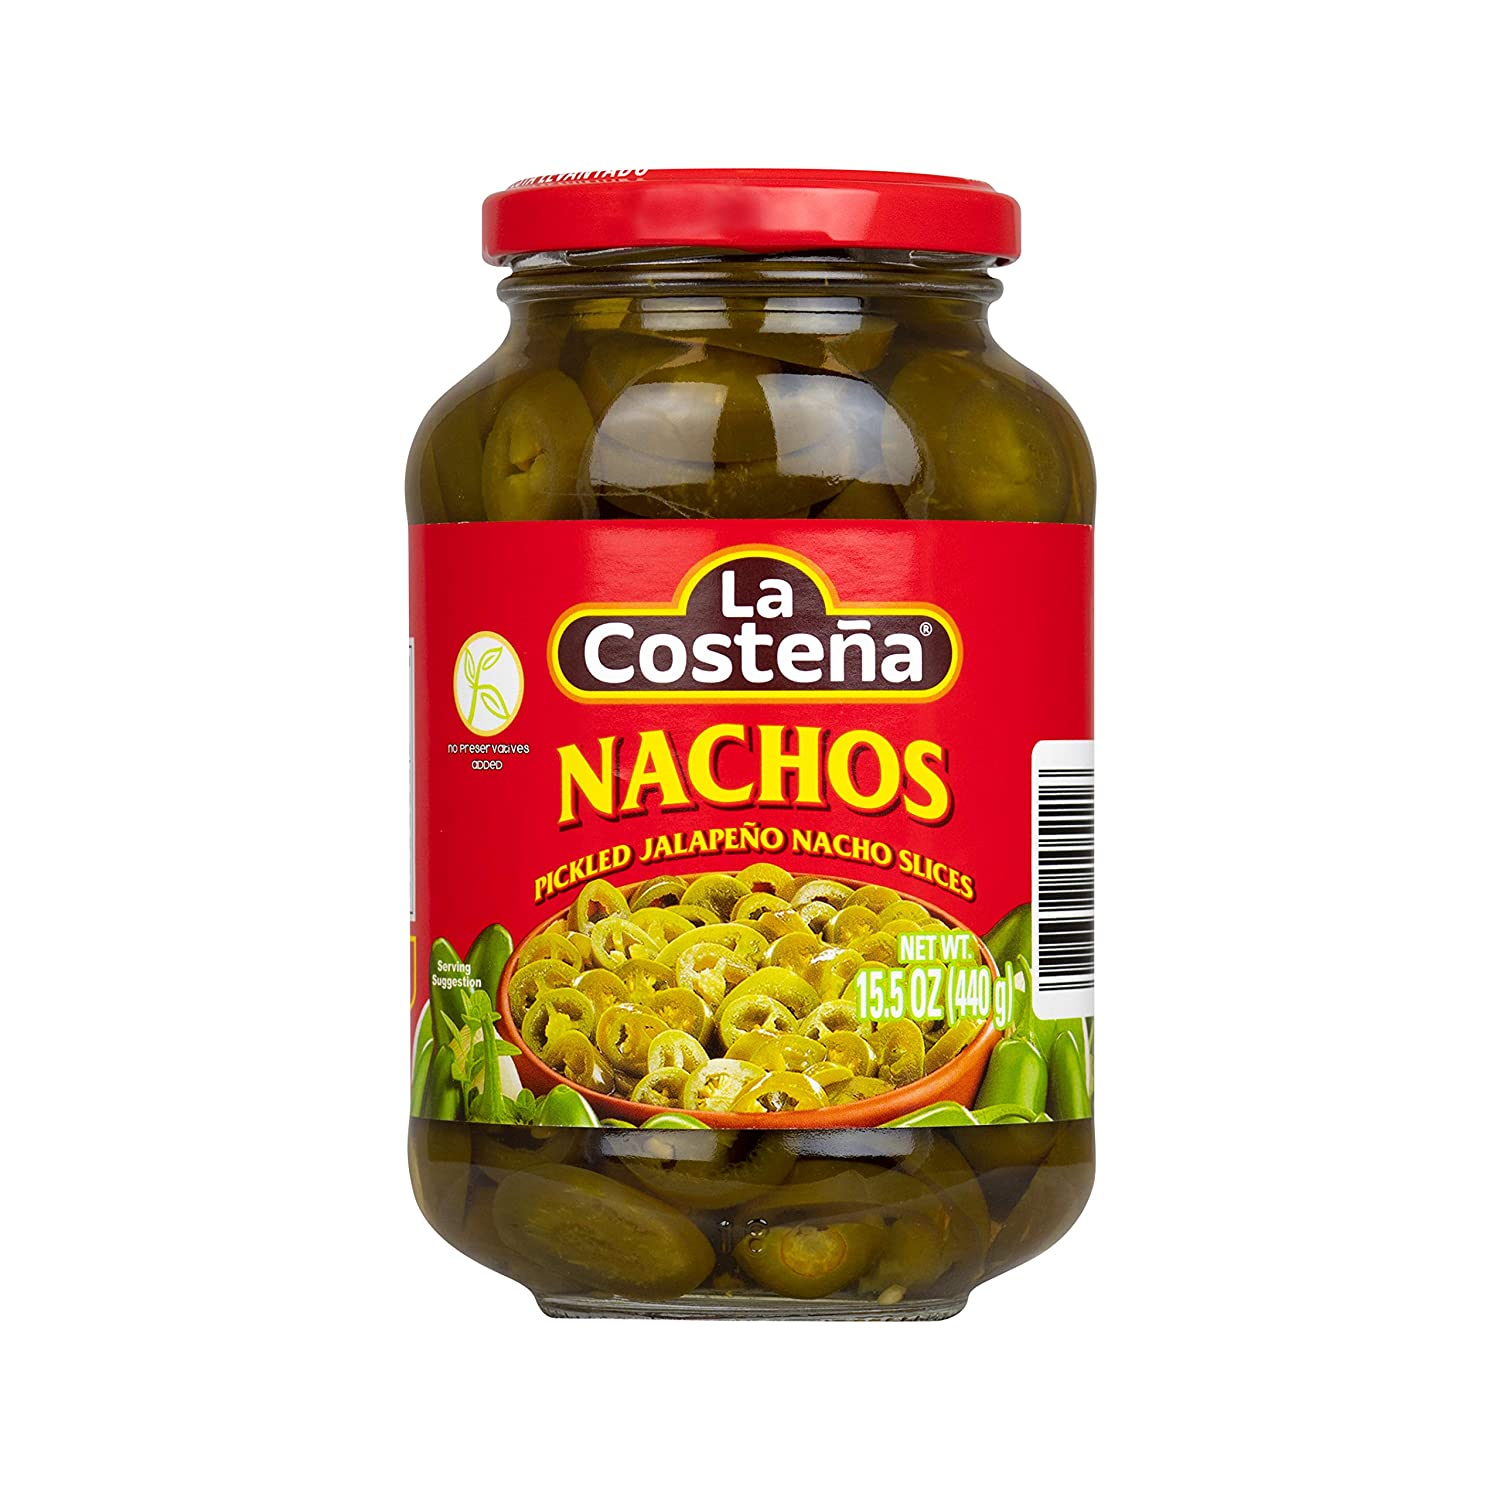 La Costena Pickled Jalapeno Nacho Slices 477ml